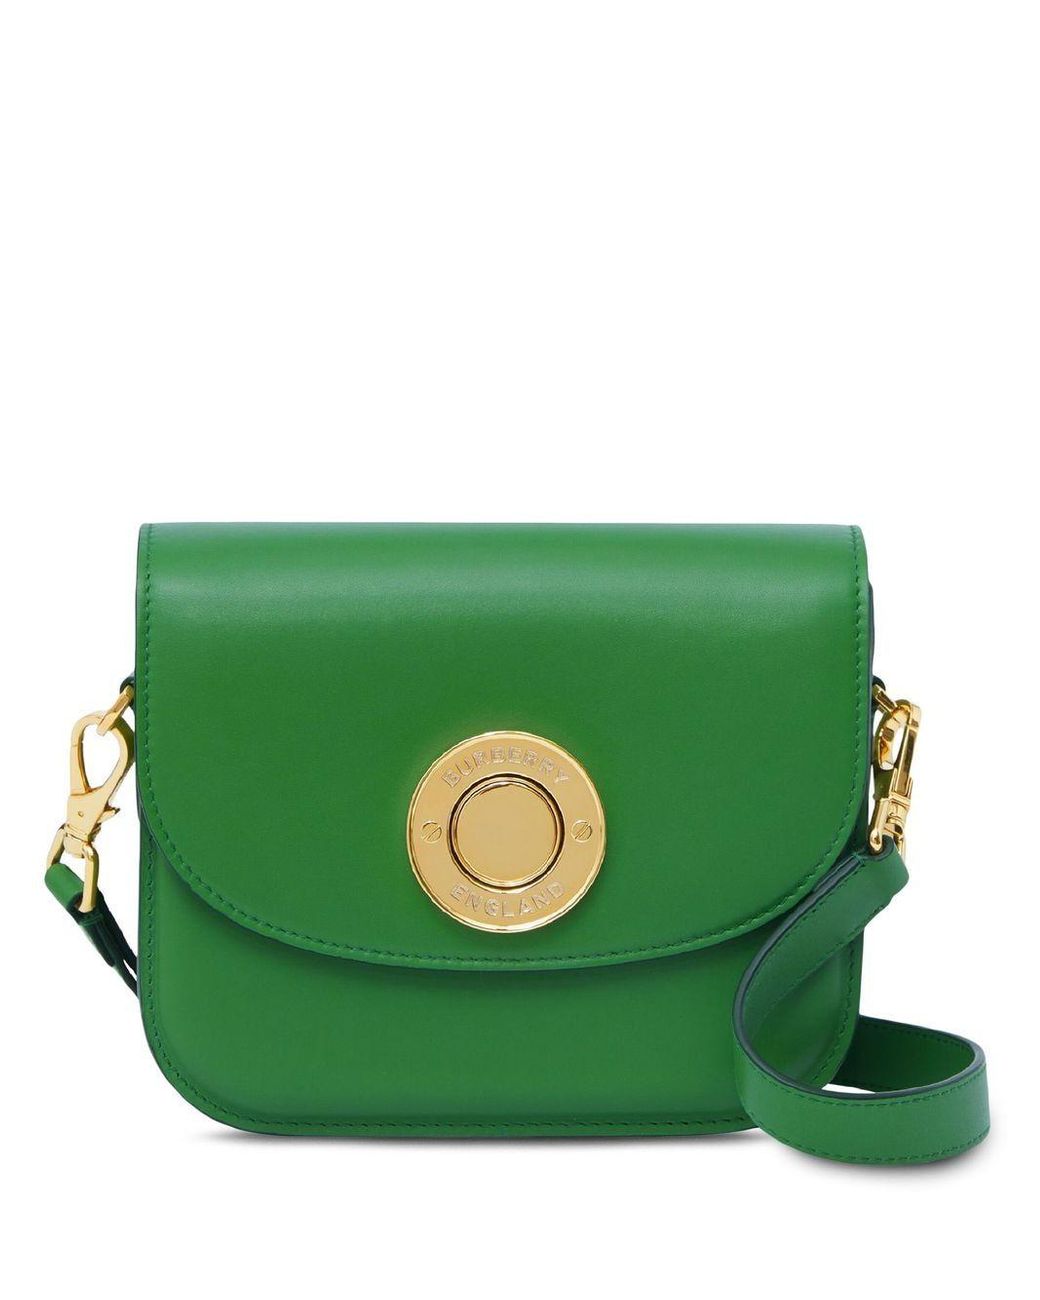 Burberry Leather Small Elizabeth Crossbody Bag in Green | Lyst